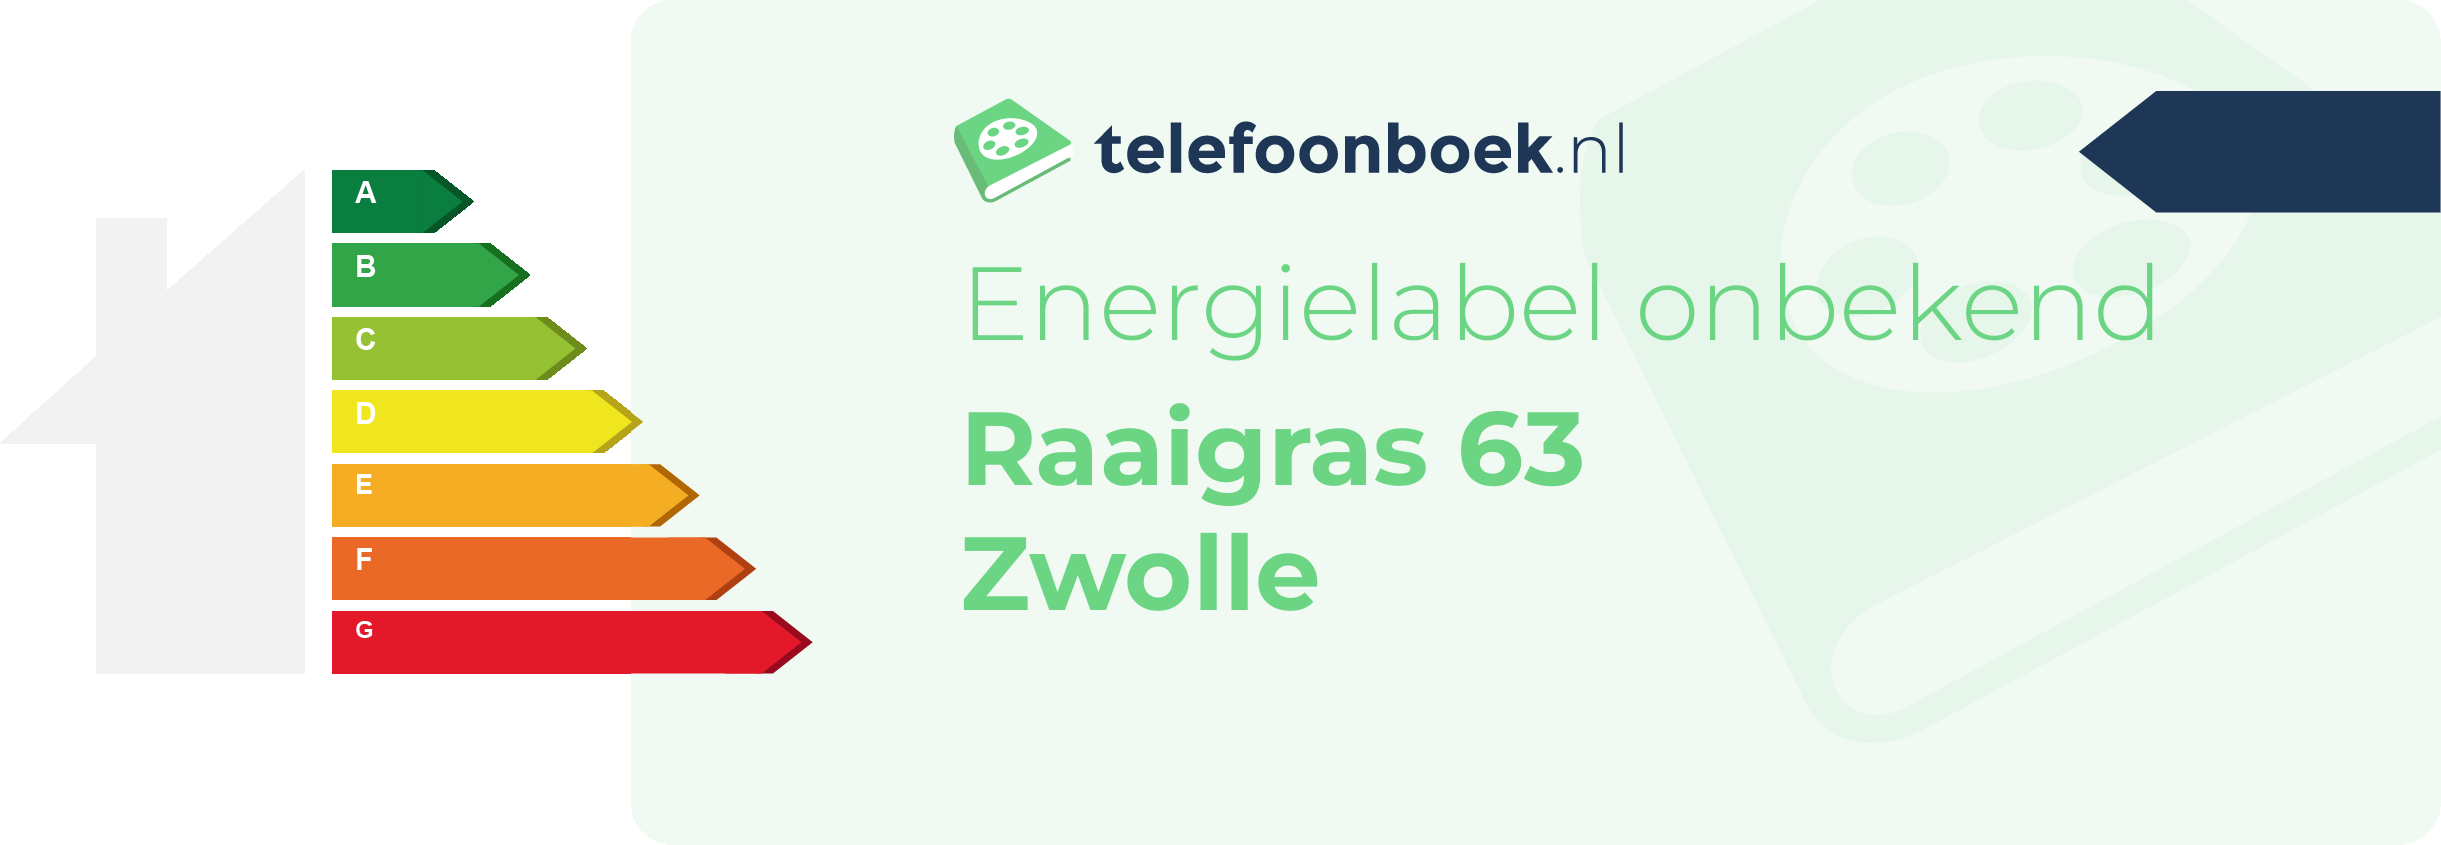 Energielabel Raaigras 63 Zwolle